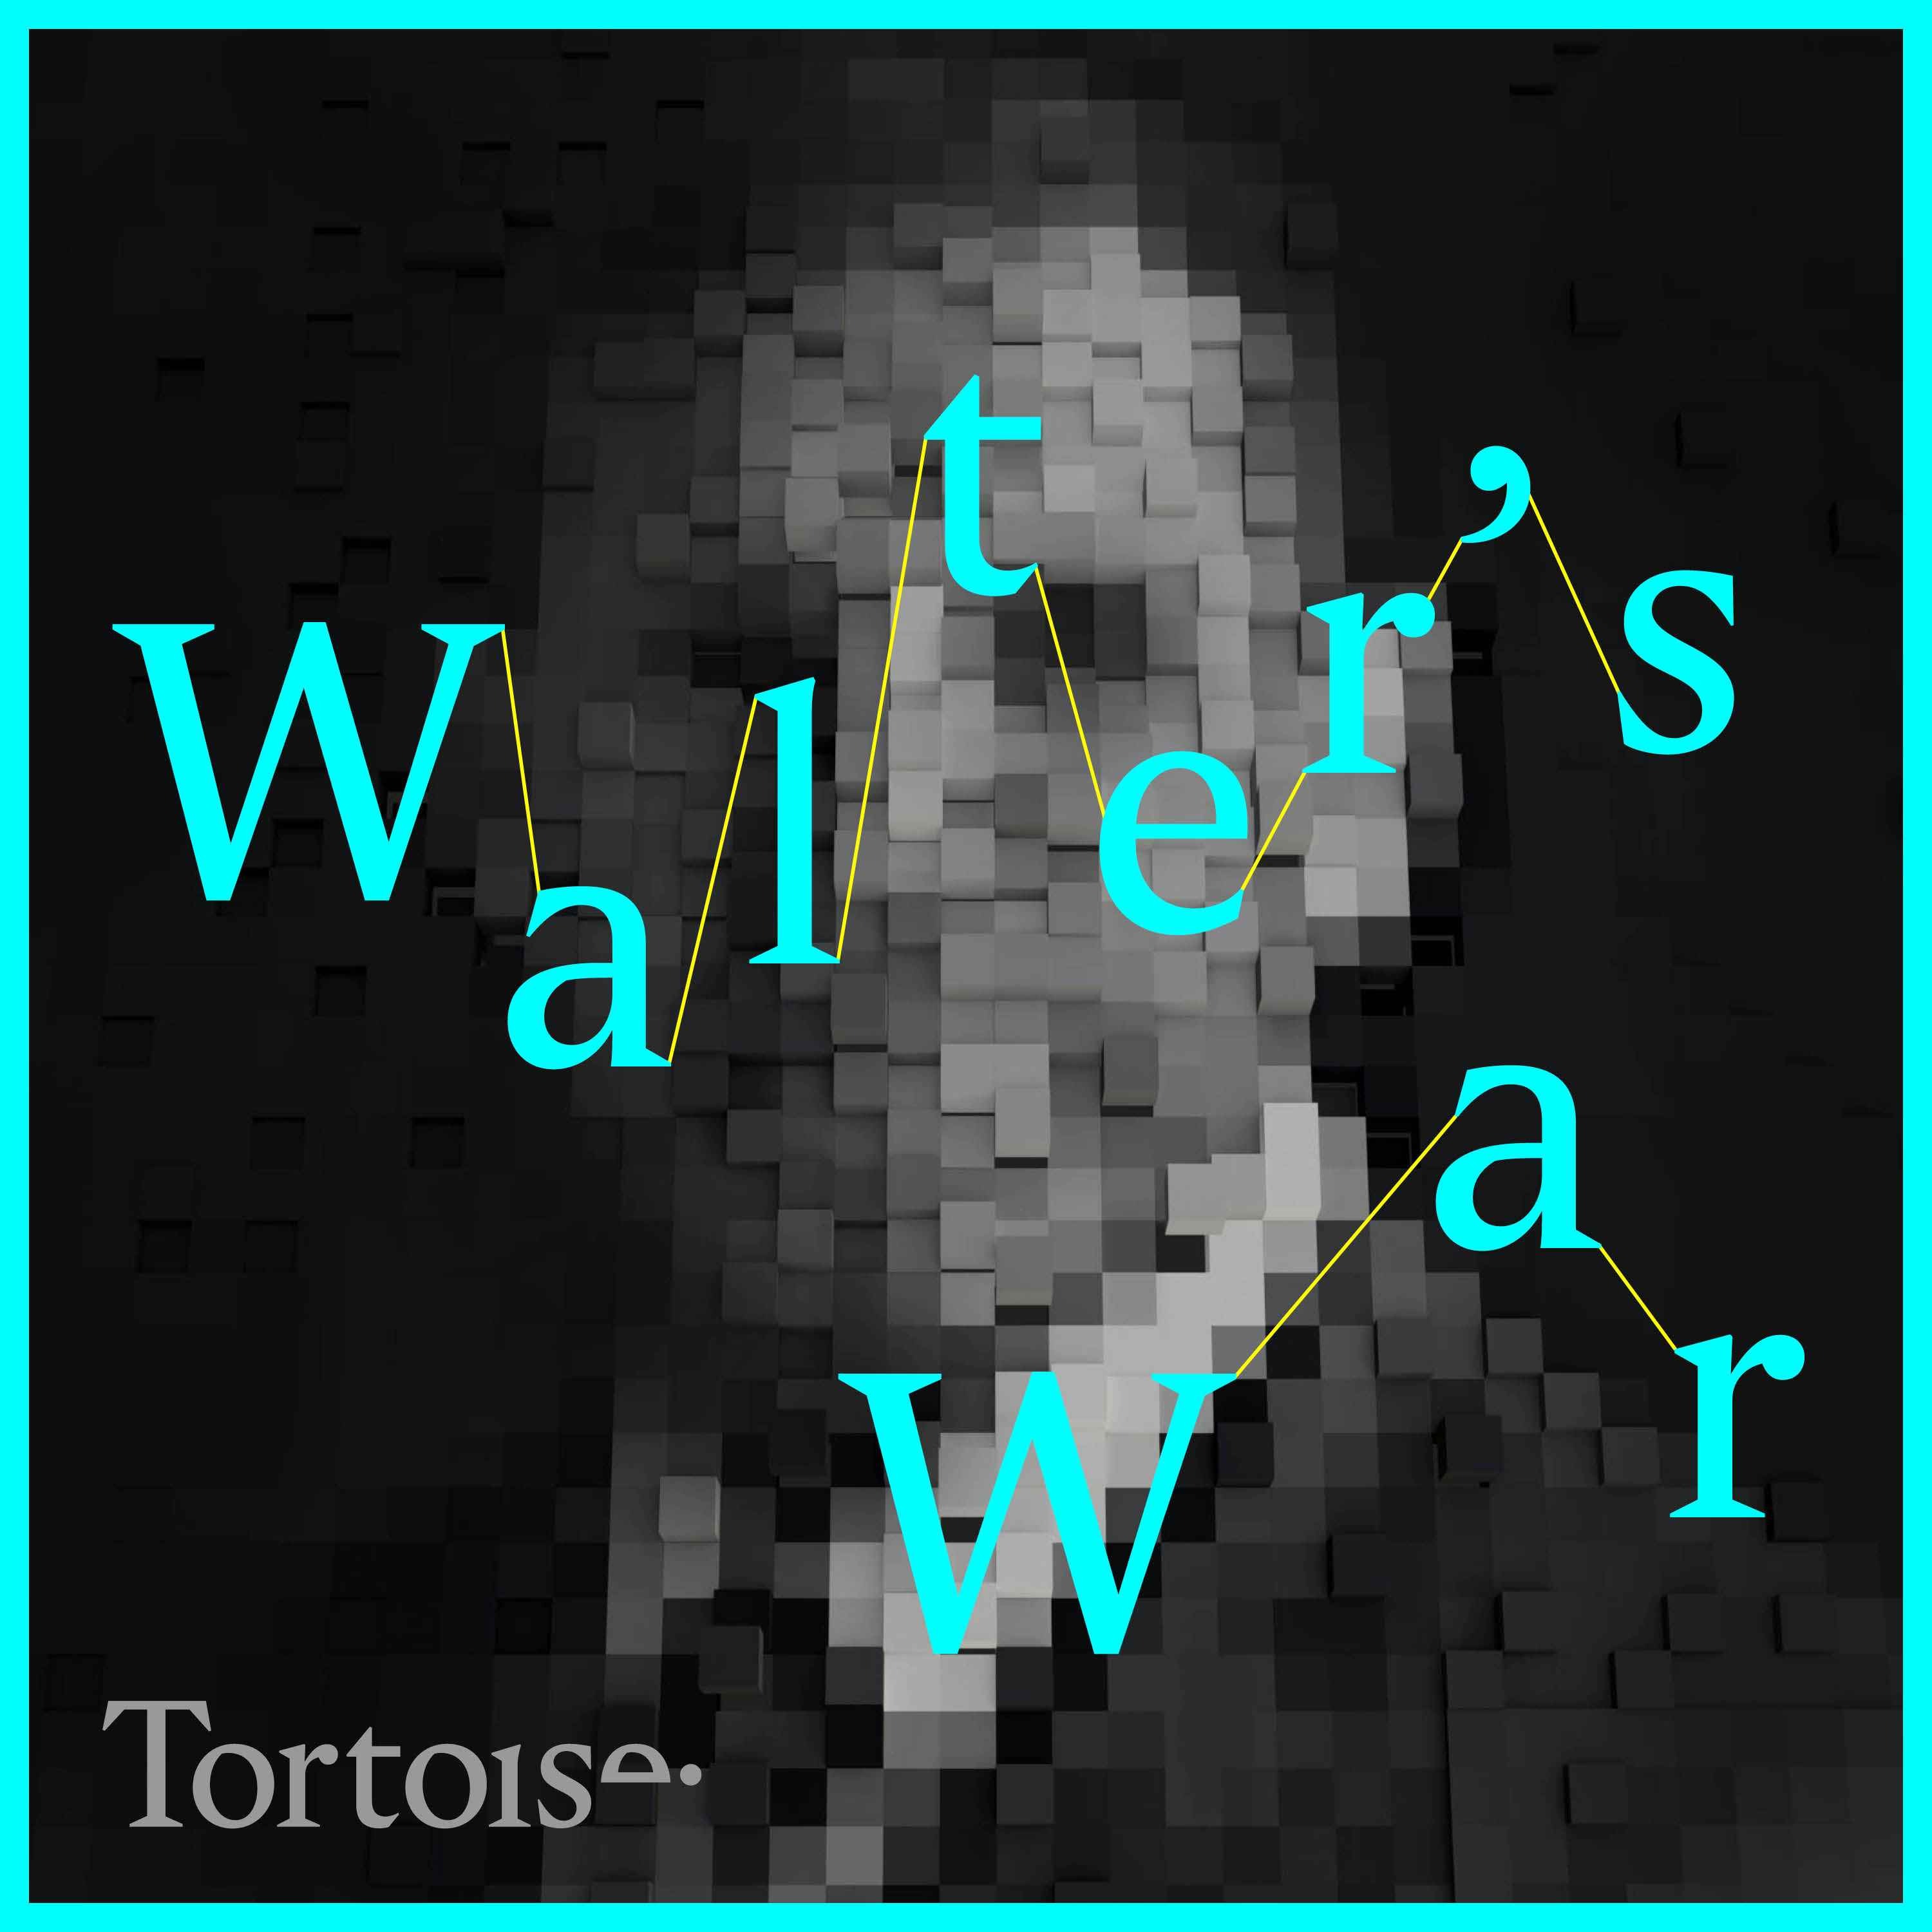 Walter’s War: Episode 1 - An English gentleman